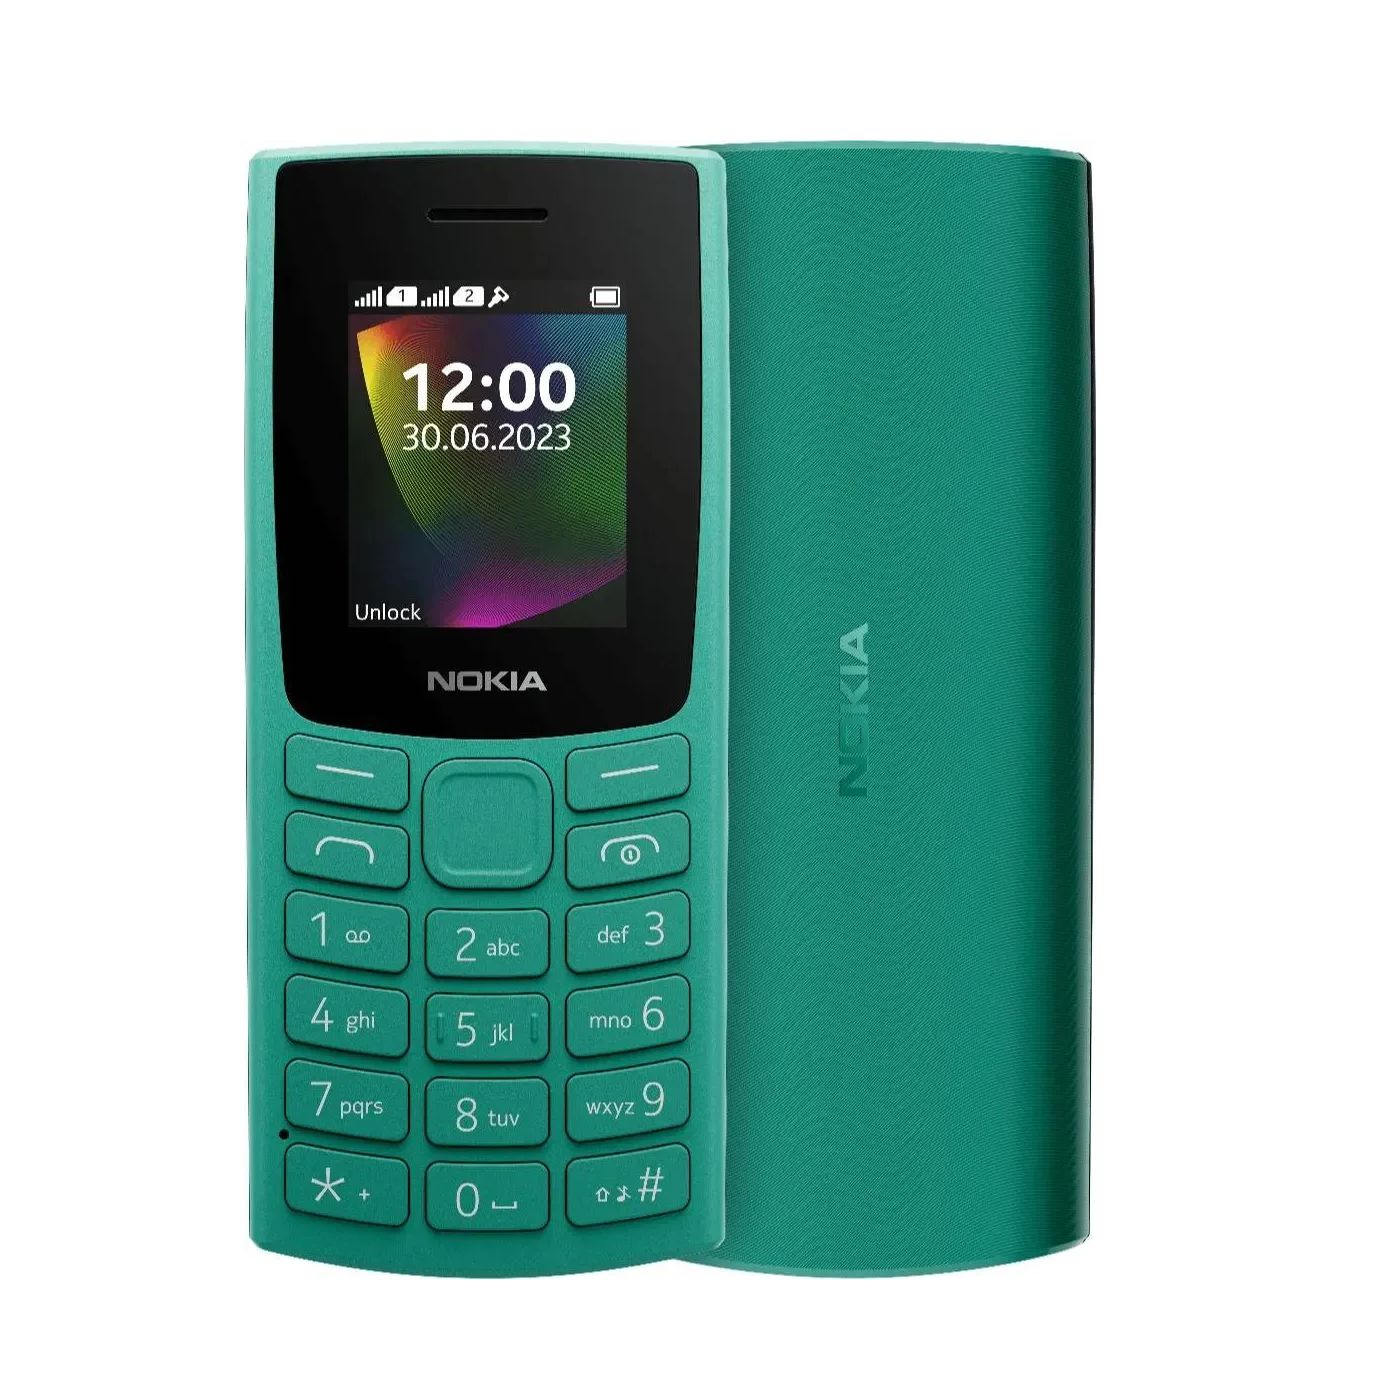 Мобильный телефон Nokia 106 (TA-1564) DS EAC Green цена и фото